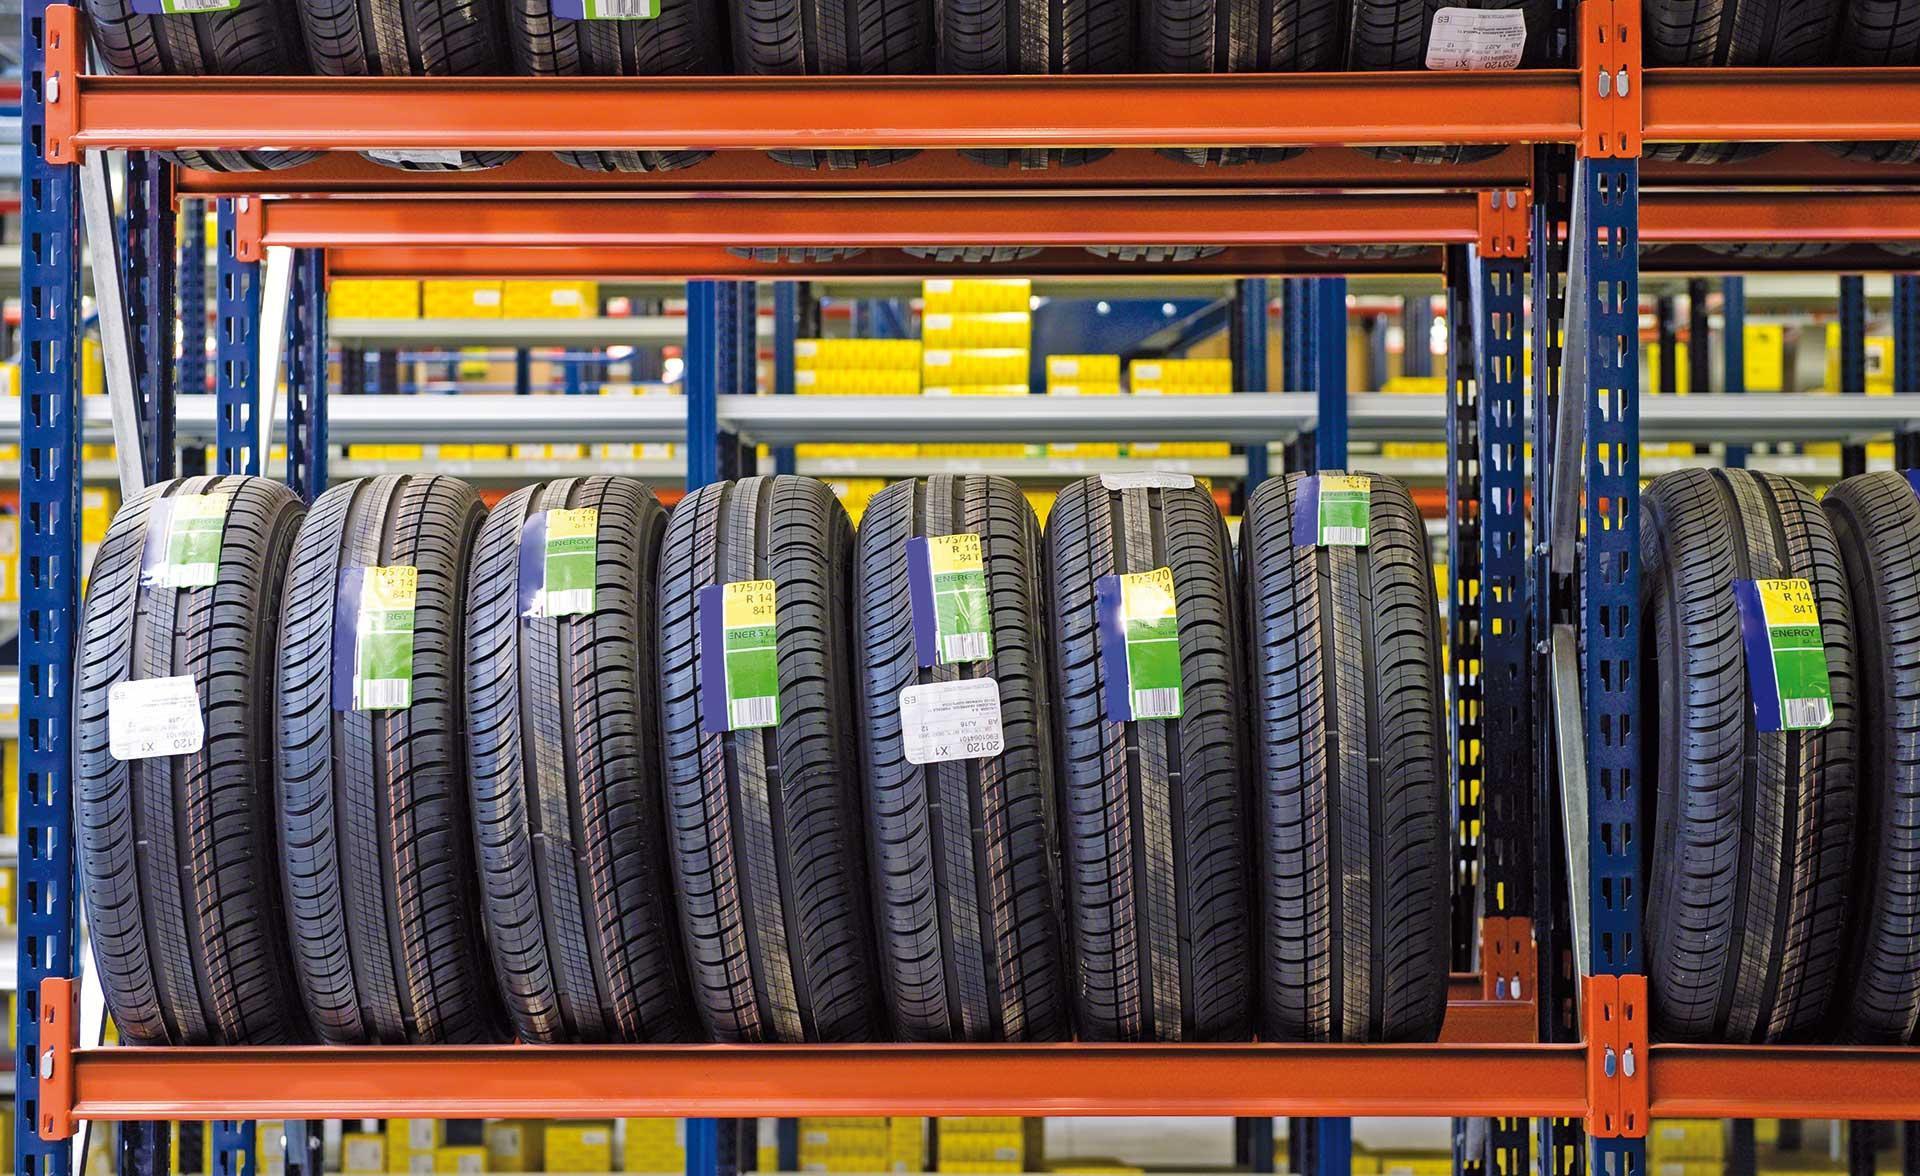 Para armazenar pneus, é necessário ajustar as características das prateleiras